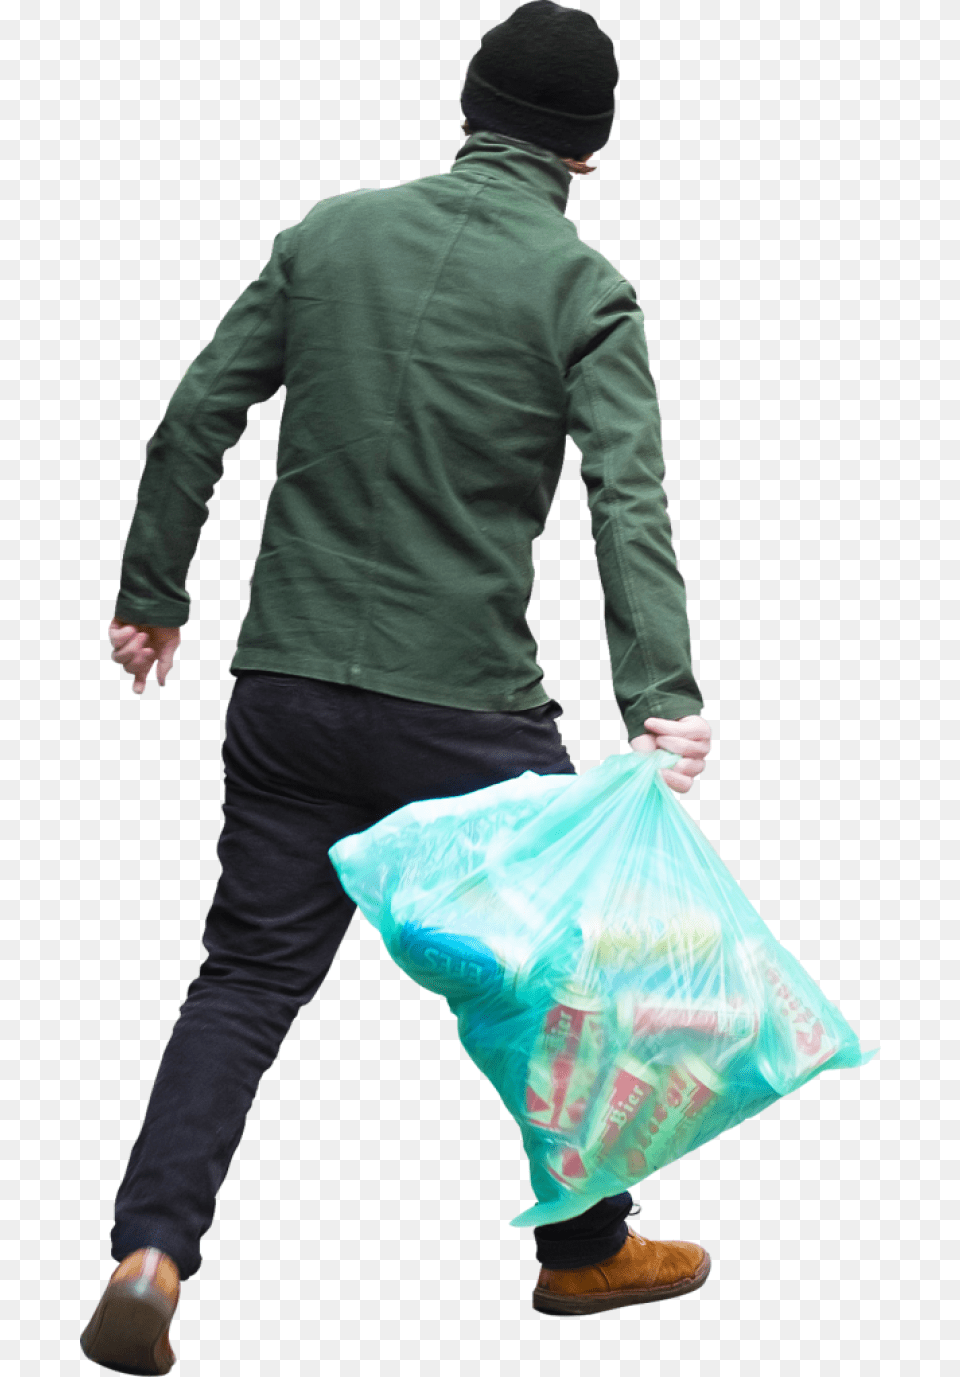 Trash Bag Image People Throwing Trash, Sleeve, Plastic, Long Sleeve, Coat Free Png